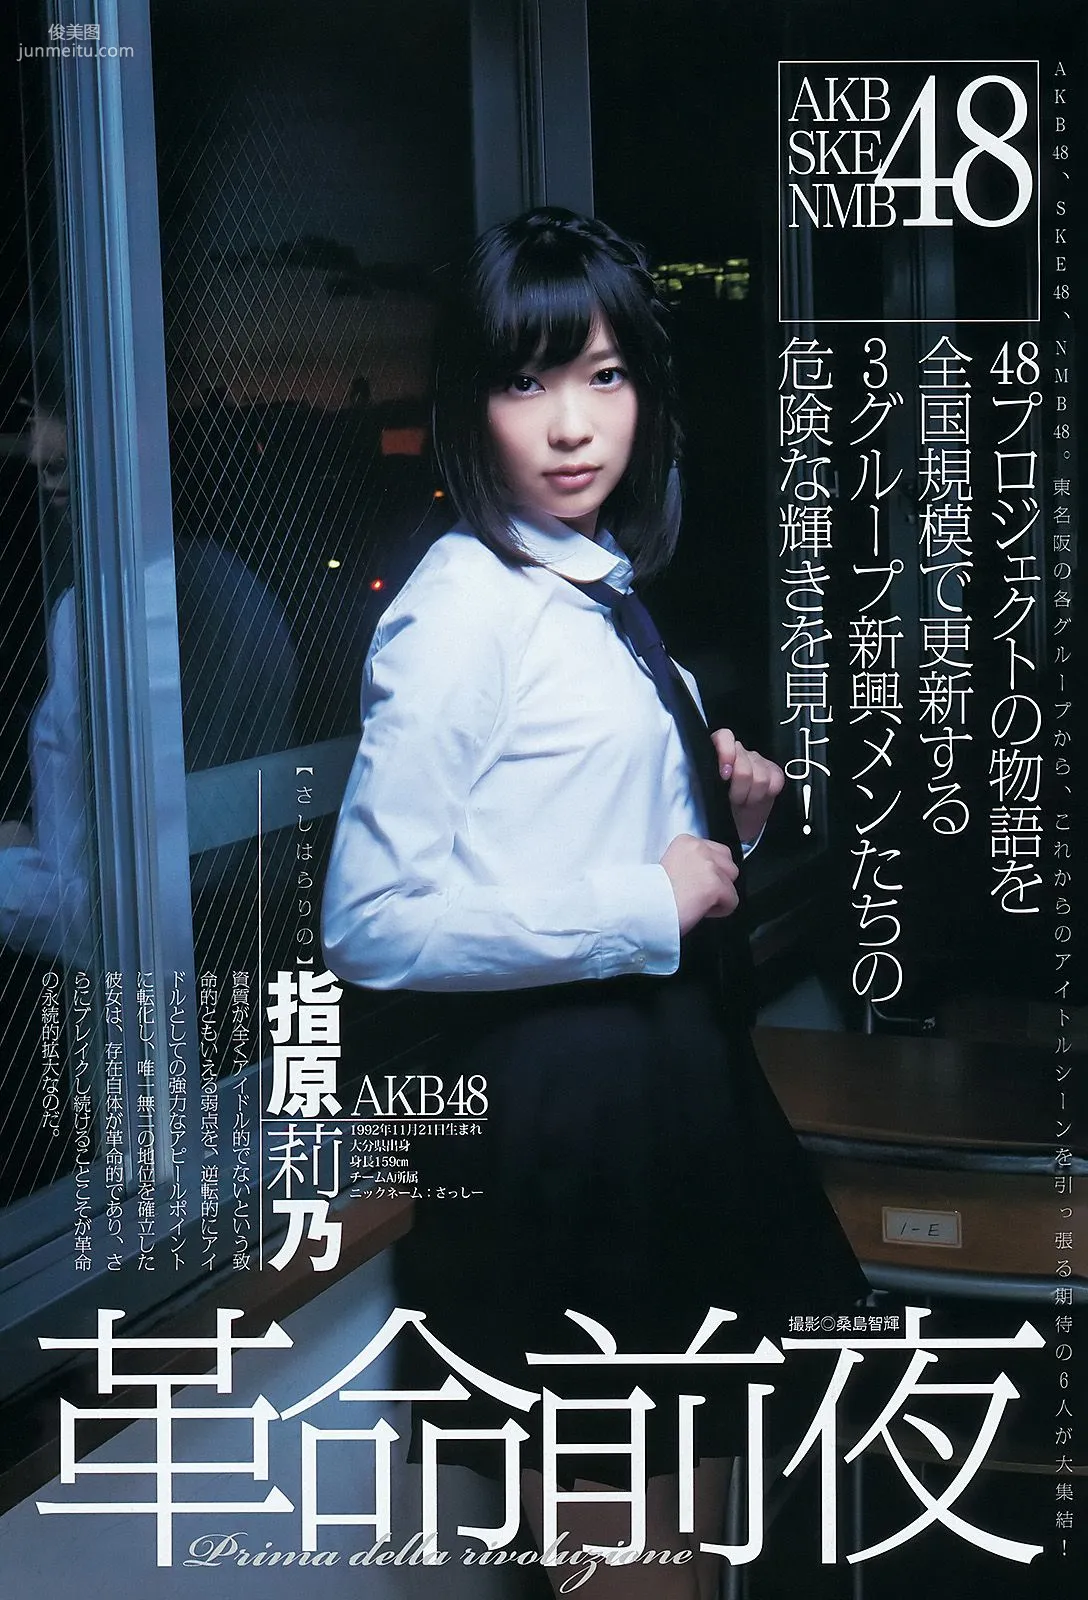 AKB48 NMB48 SKE48 仮面ライダーGIRLS [週刊ヤングジャンプ] 2012年No.04-05写真杂志2